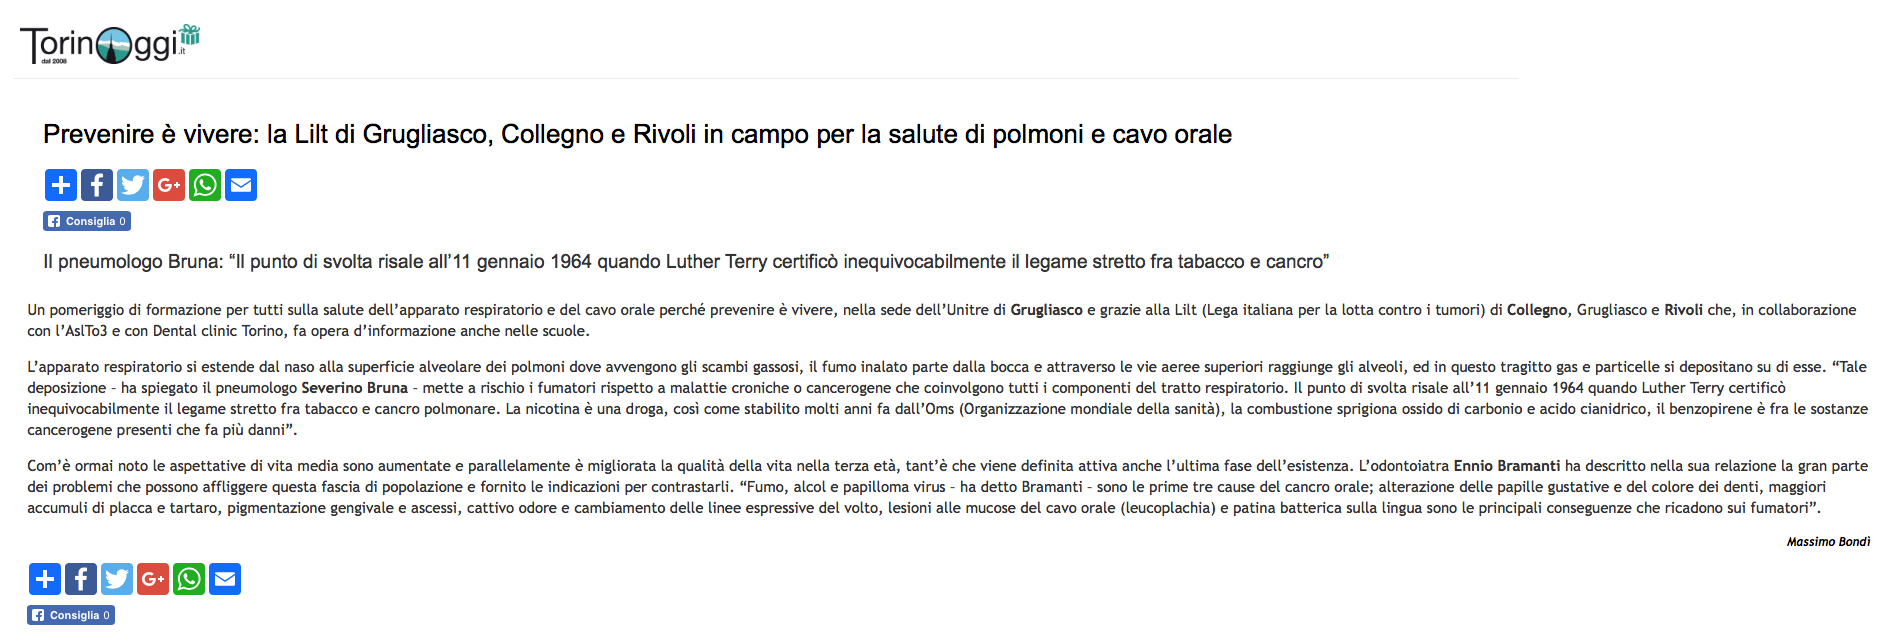 Articolo “TorinoOggi.it”